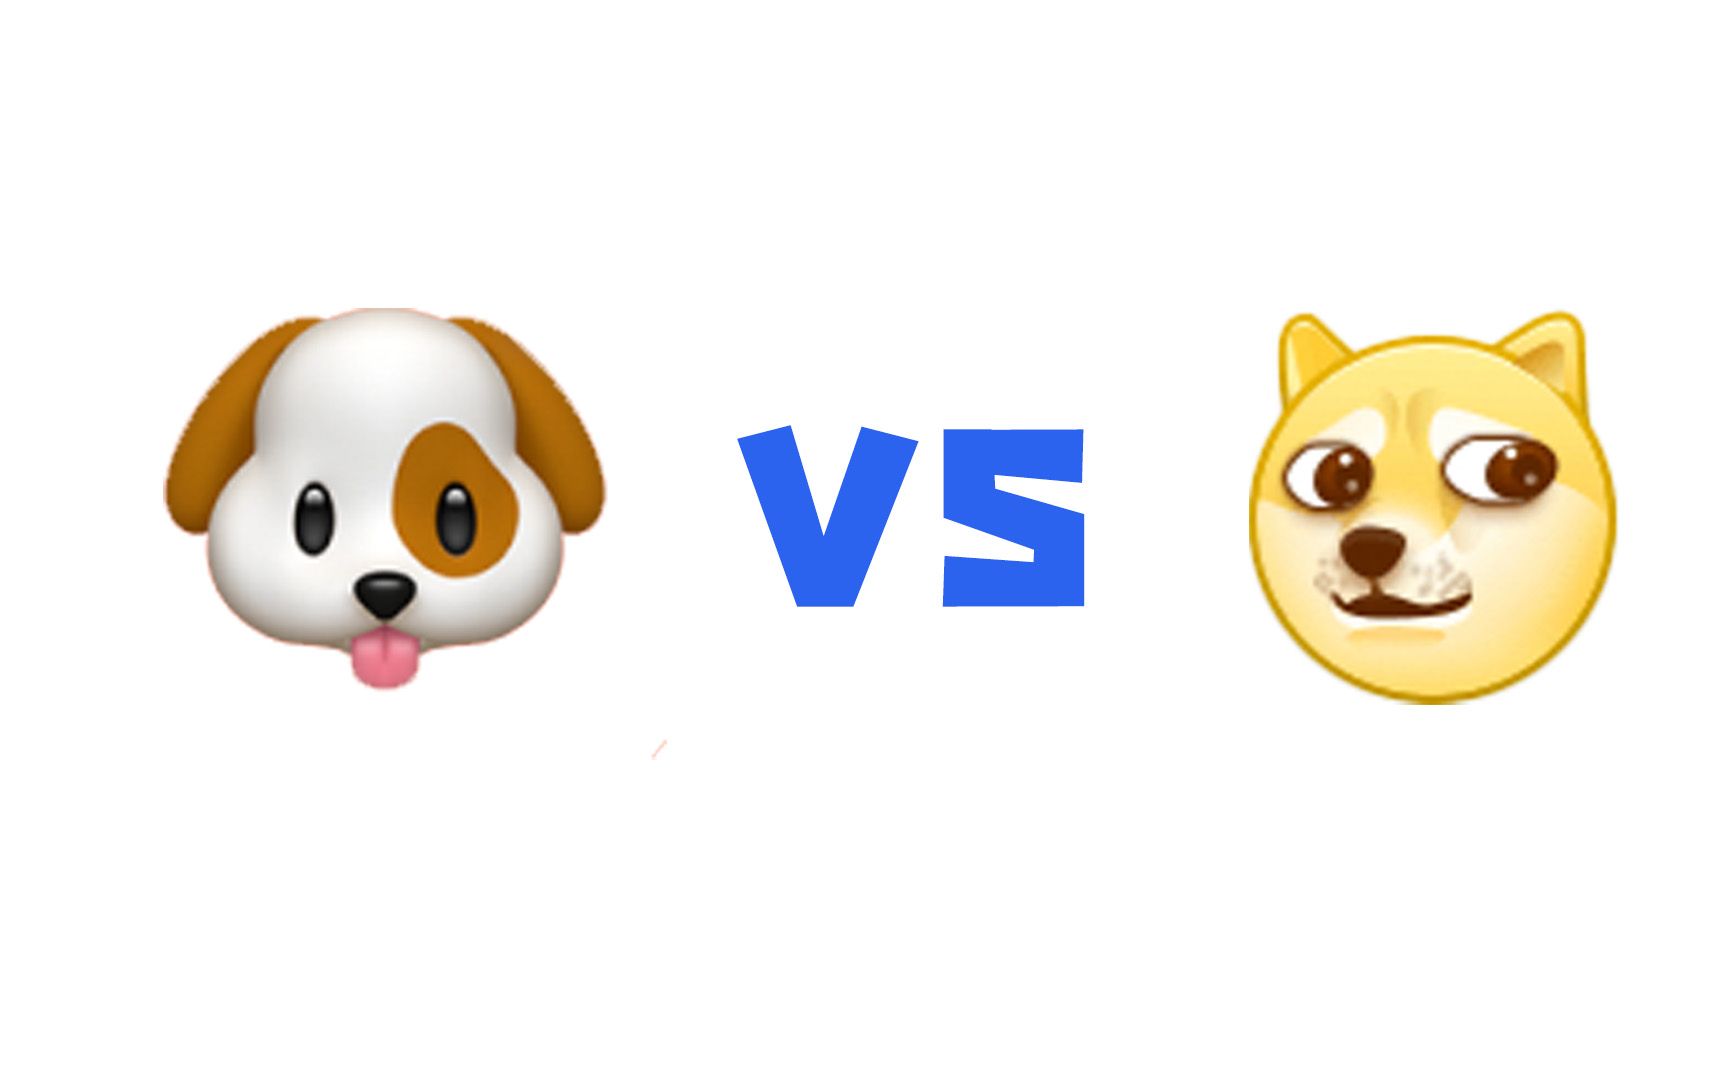 为什么微博表情包里最火的狗头,emoji里没有呢?